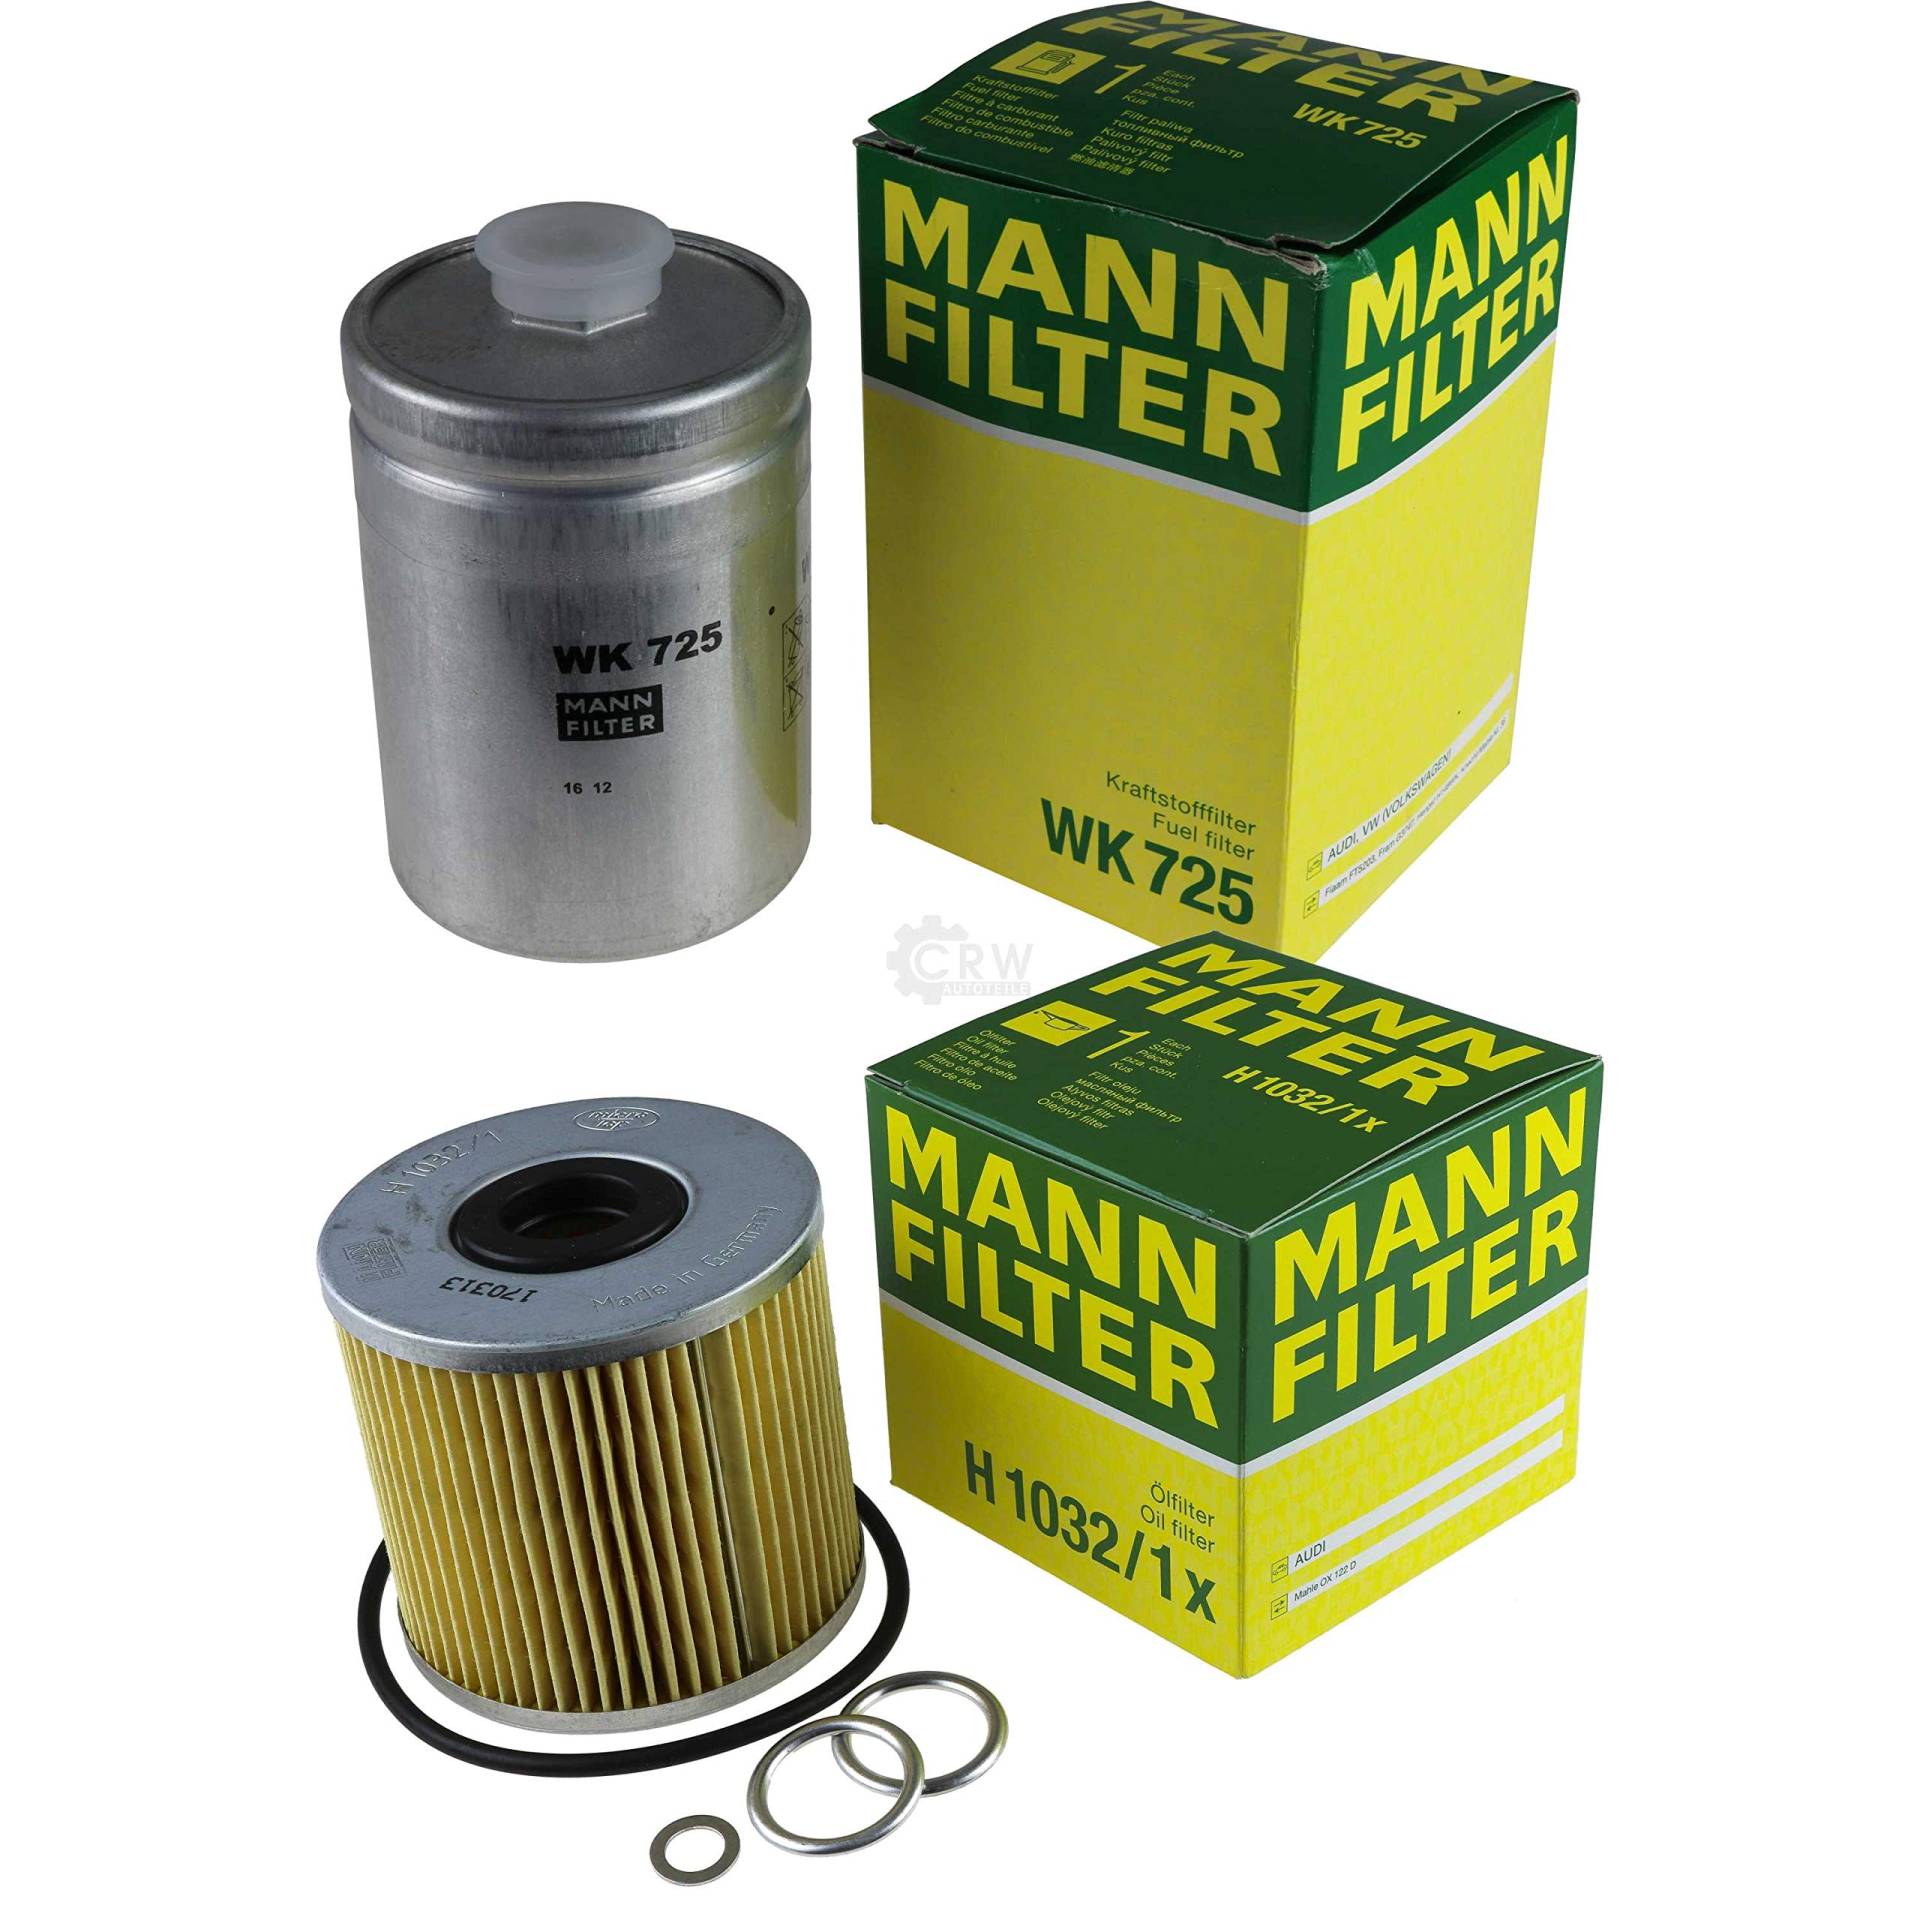 MANN-FILTER Inspektions Set Inspektionspaket Ölfilter Kraftstofffilter von Diederichs